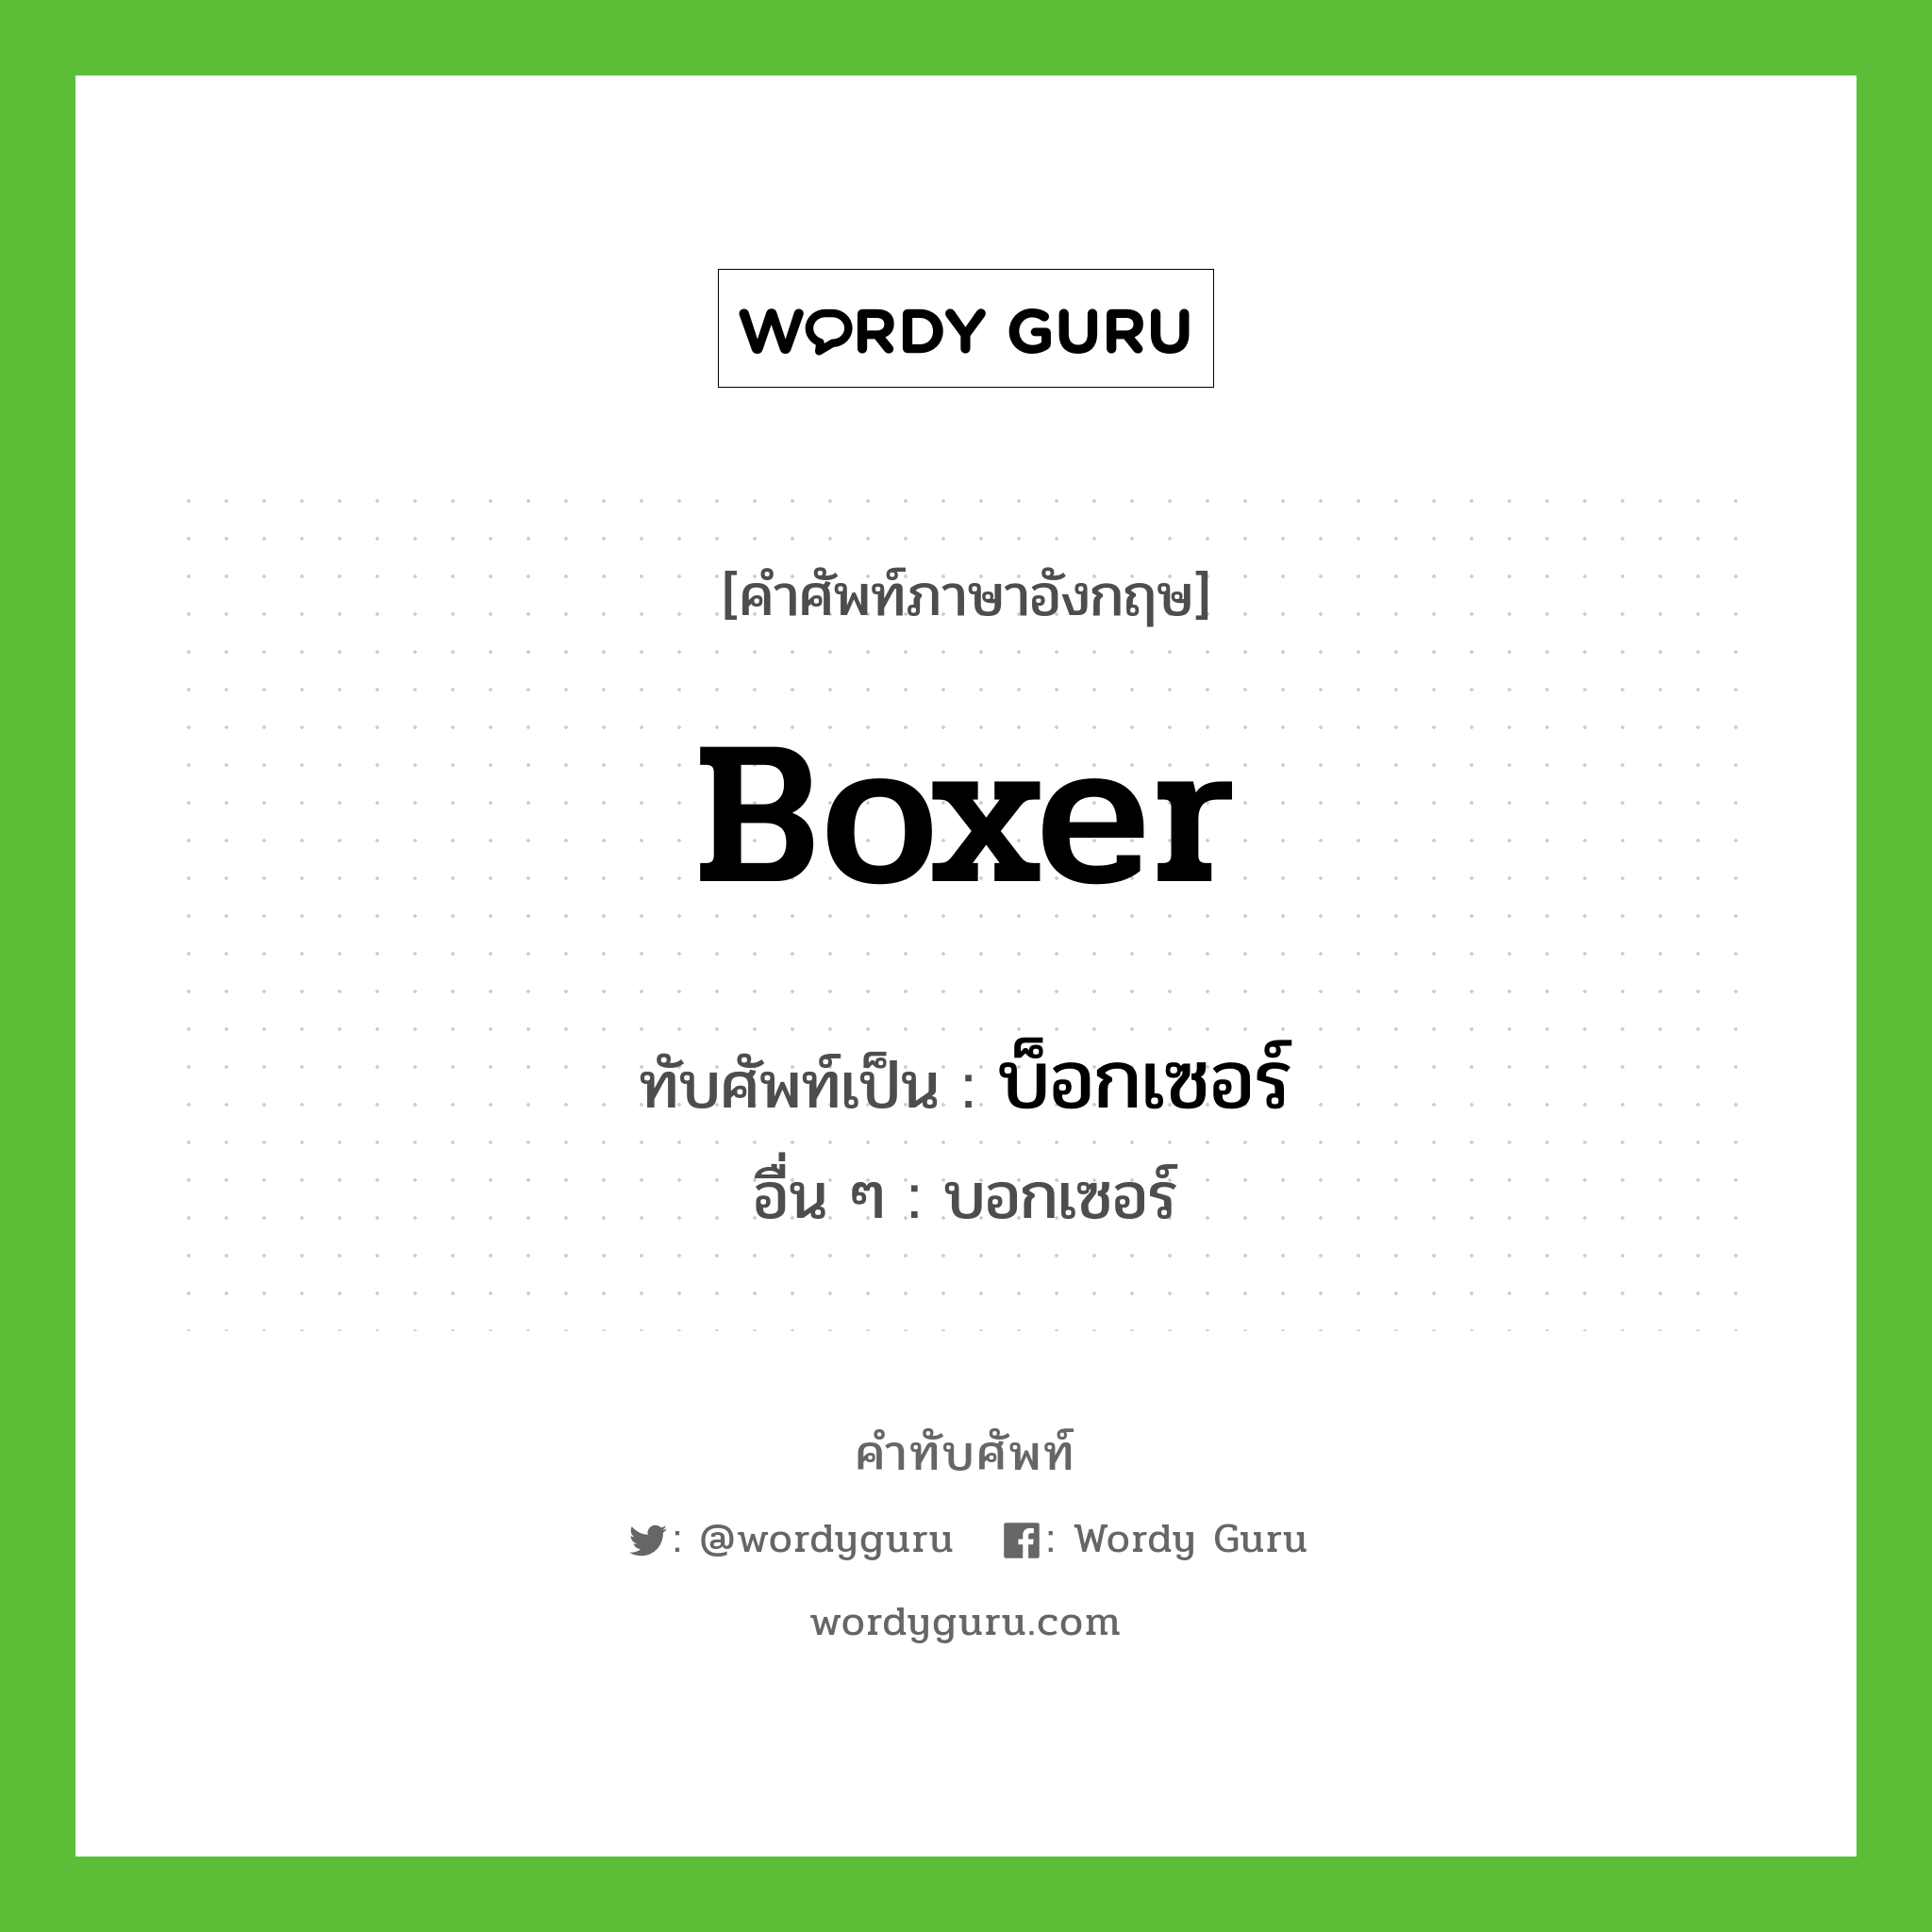 boxer เขียนเป็นคำไทยว่าอะไร?, คำศัพท์ภาษาอังกฤษ boxer ทับศัพท์เป็น บ็อกเซอร์ อื่น ๆ บอกเซอร์